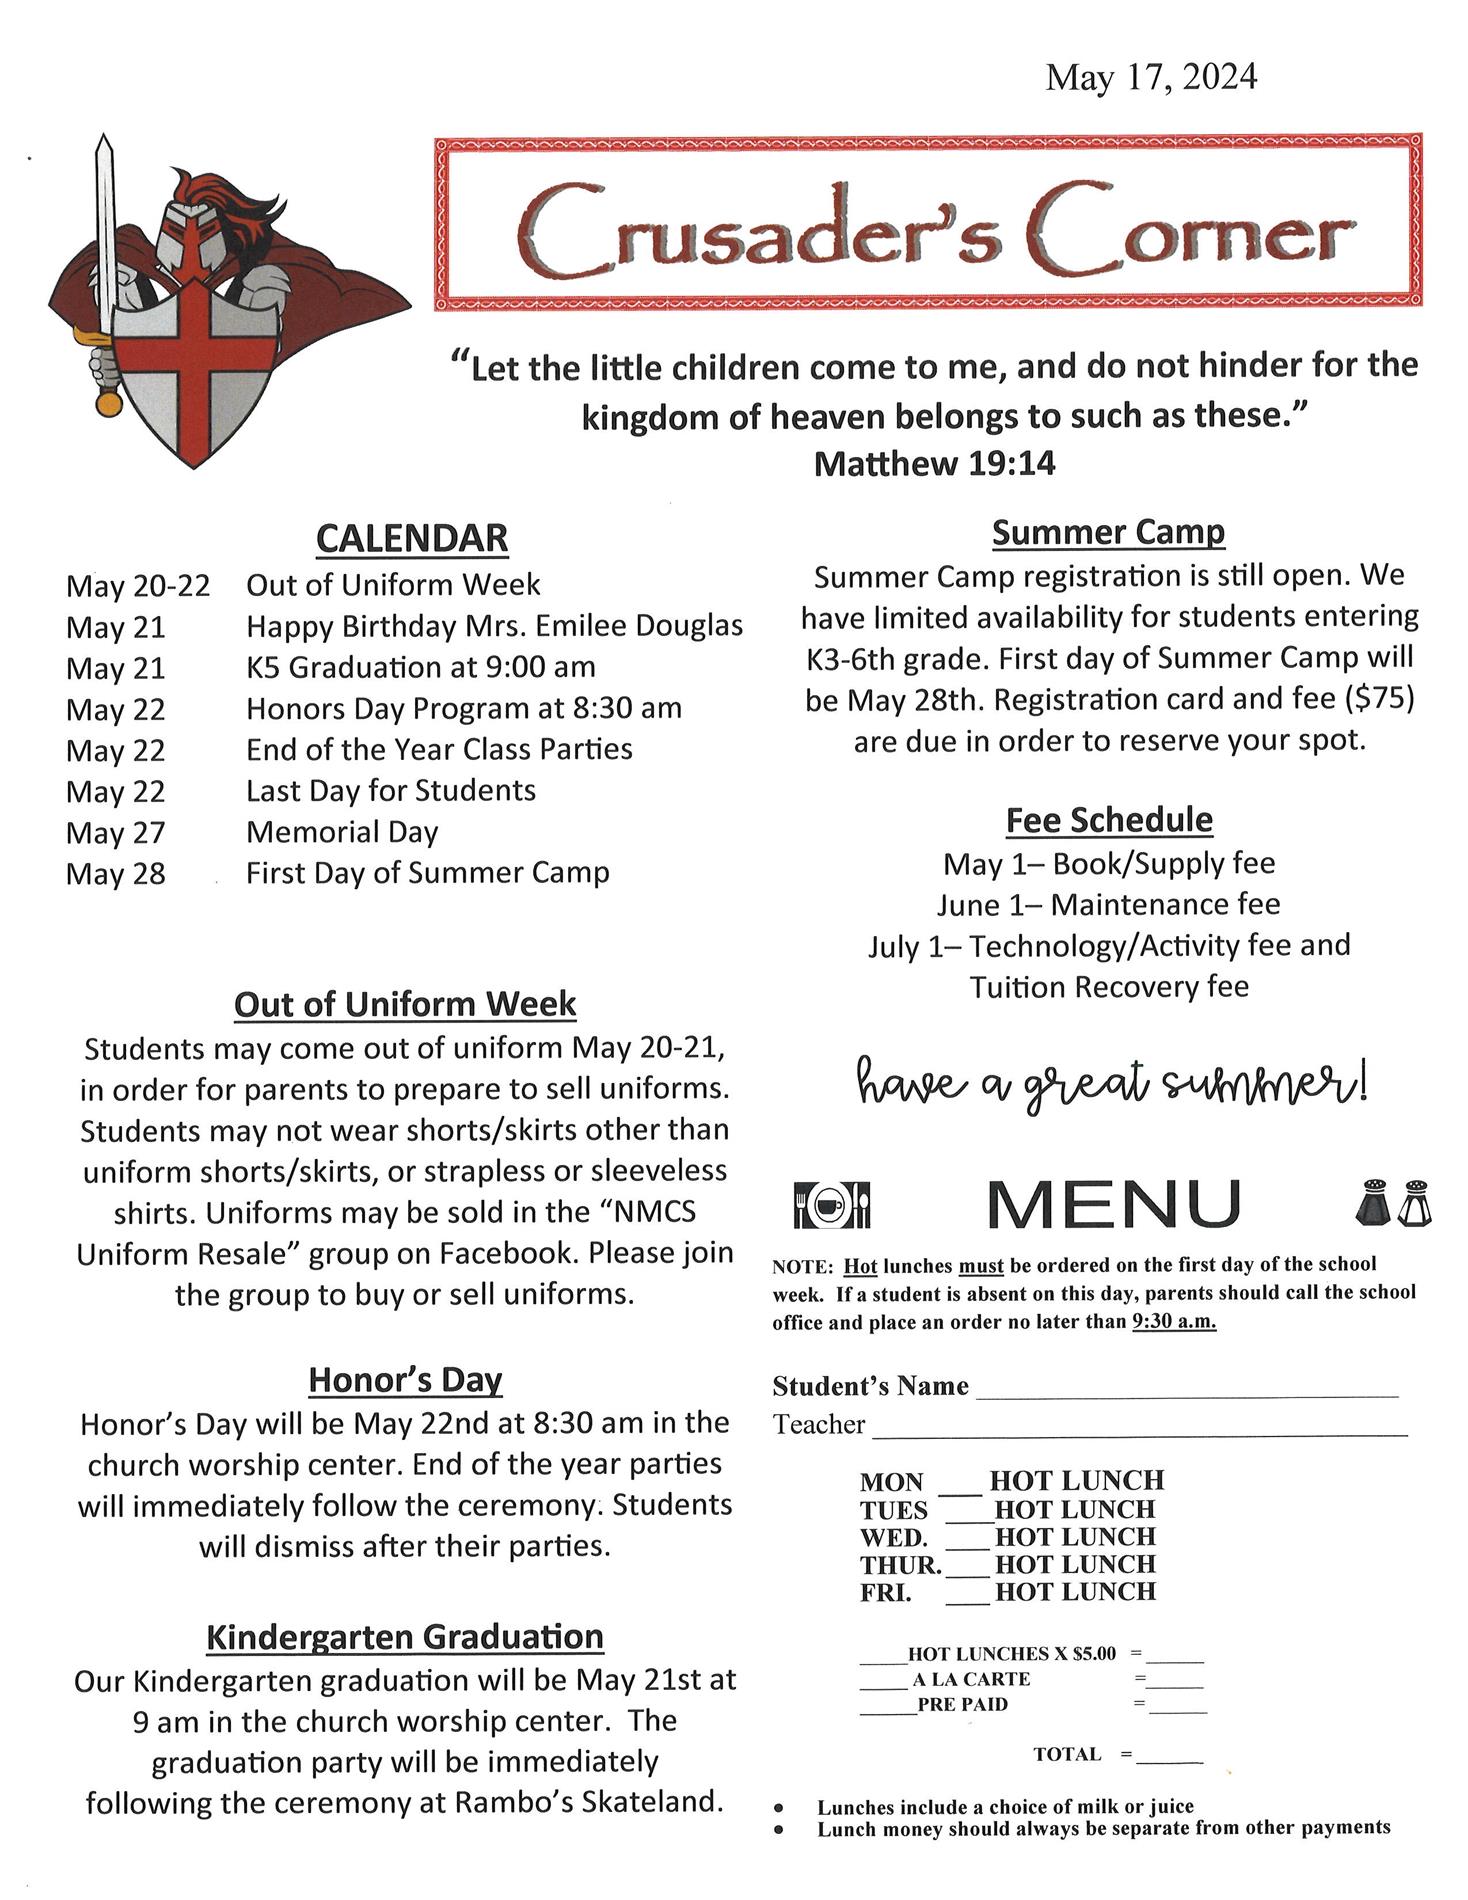 Crusader Corner